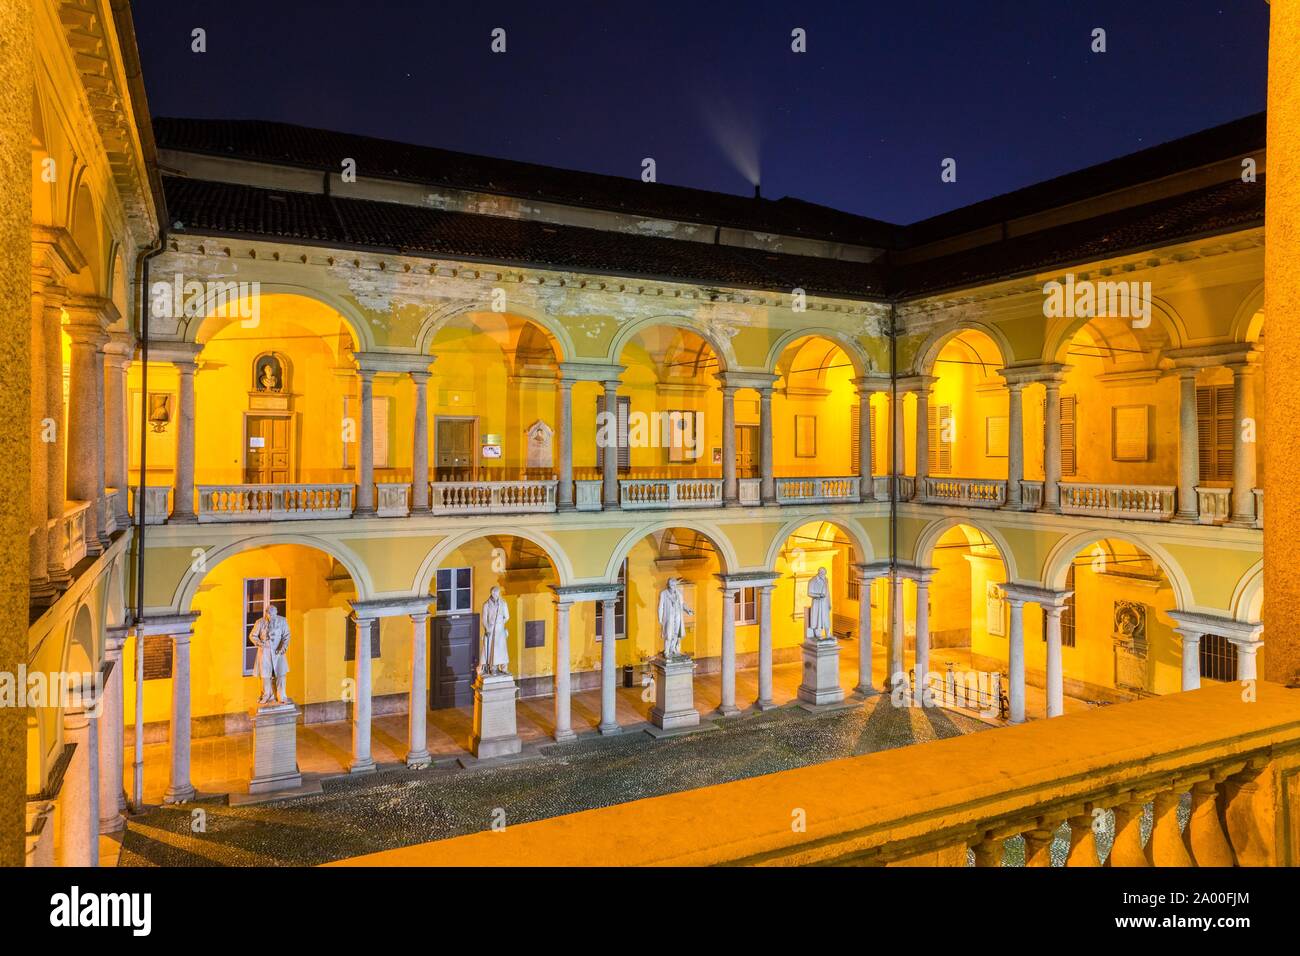 Cour intérieure illuminée avec loggia et sculptures, Université de Pavie, nuit, Pavie, Lombardie, Italie Banque D'Images